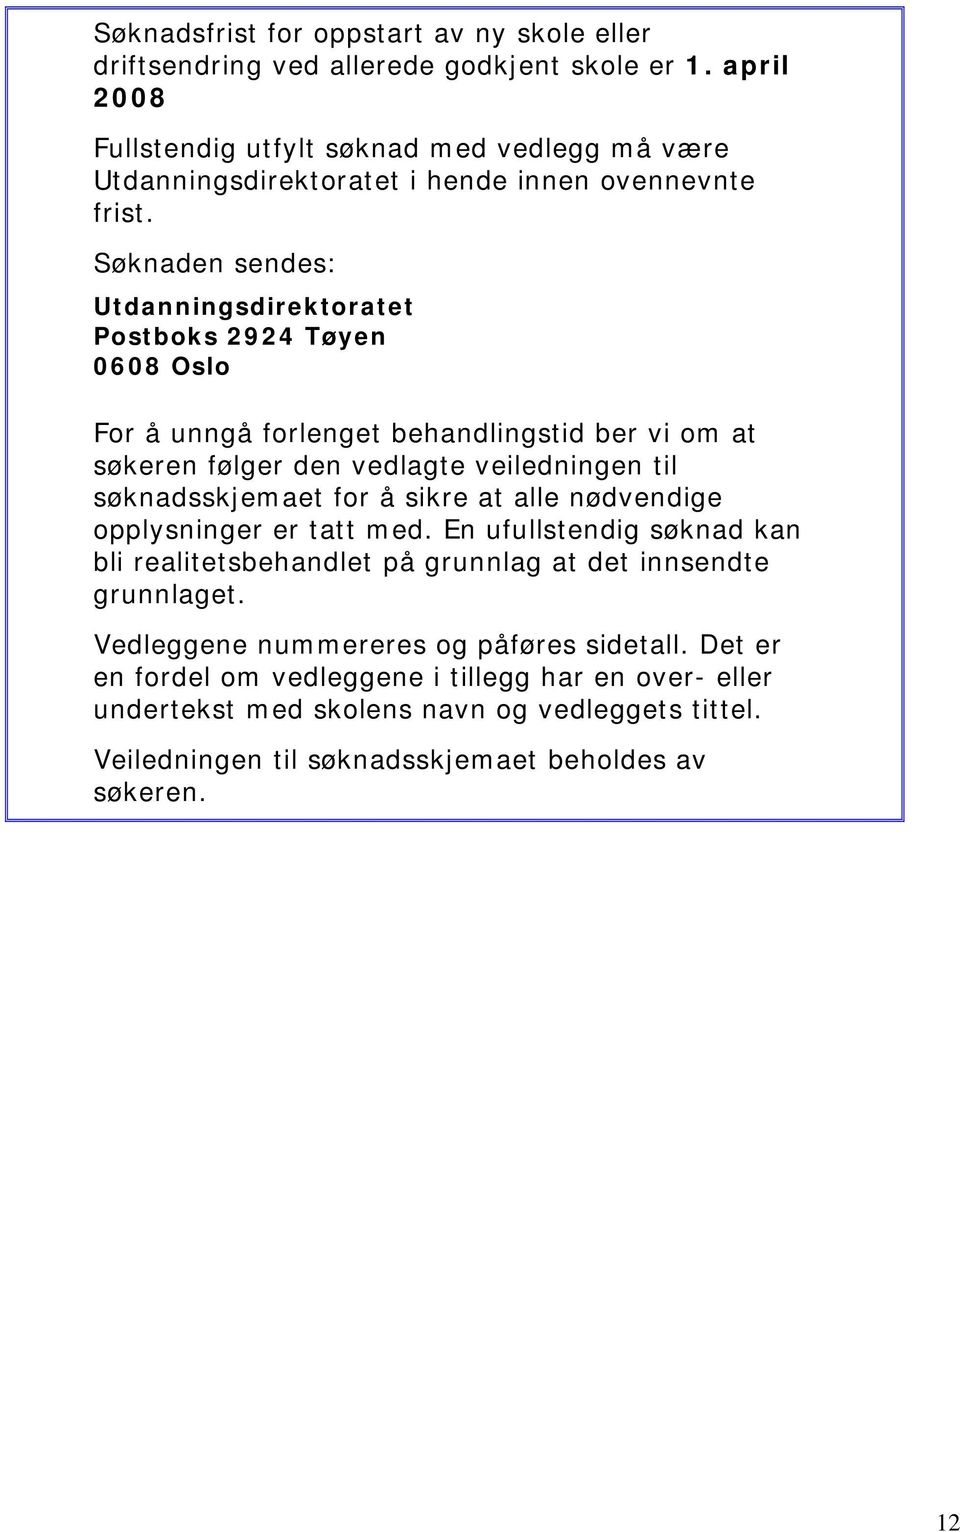 Søknaden sendes: Utdanningsdirektoratet Postboks 2924 Tøyen 0608 Oslo For å unngå forlenget behandlingstid ber vi om at søkeren følger den vedlagte veiledningen til søknadsskjemaet for